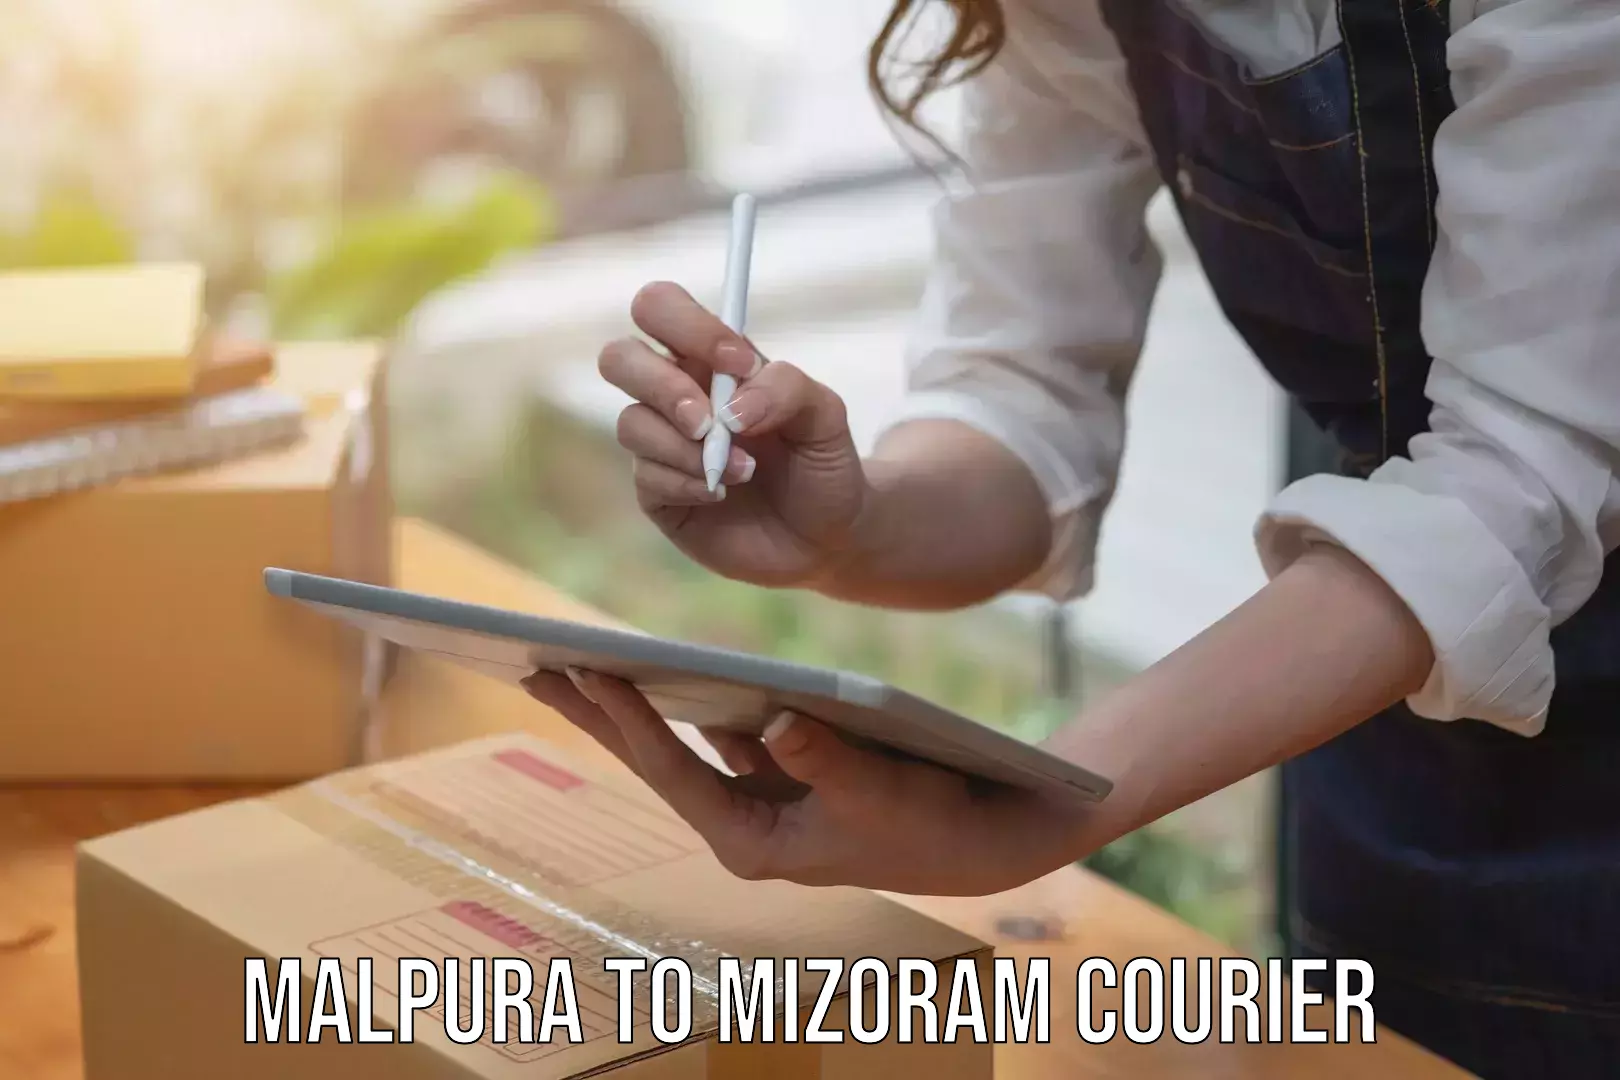 Digital courier platforms Malpura to Mizoram